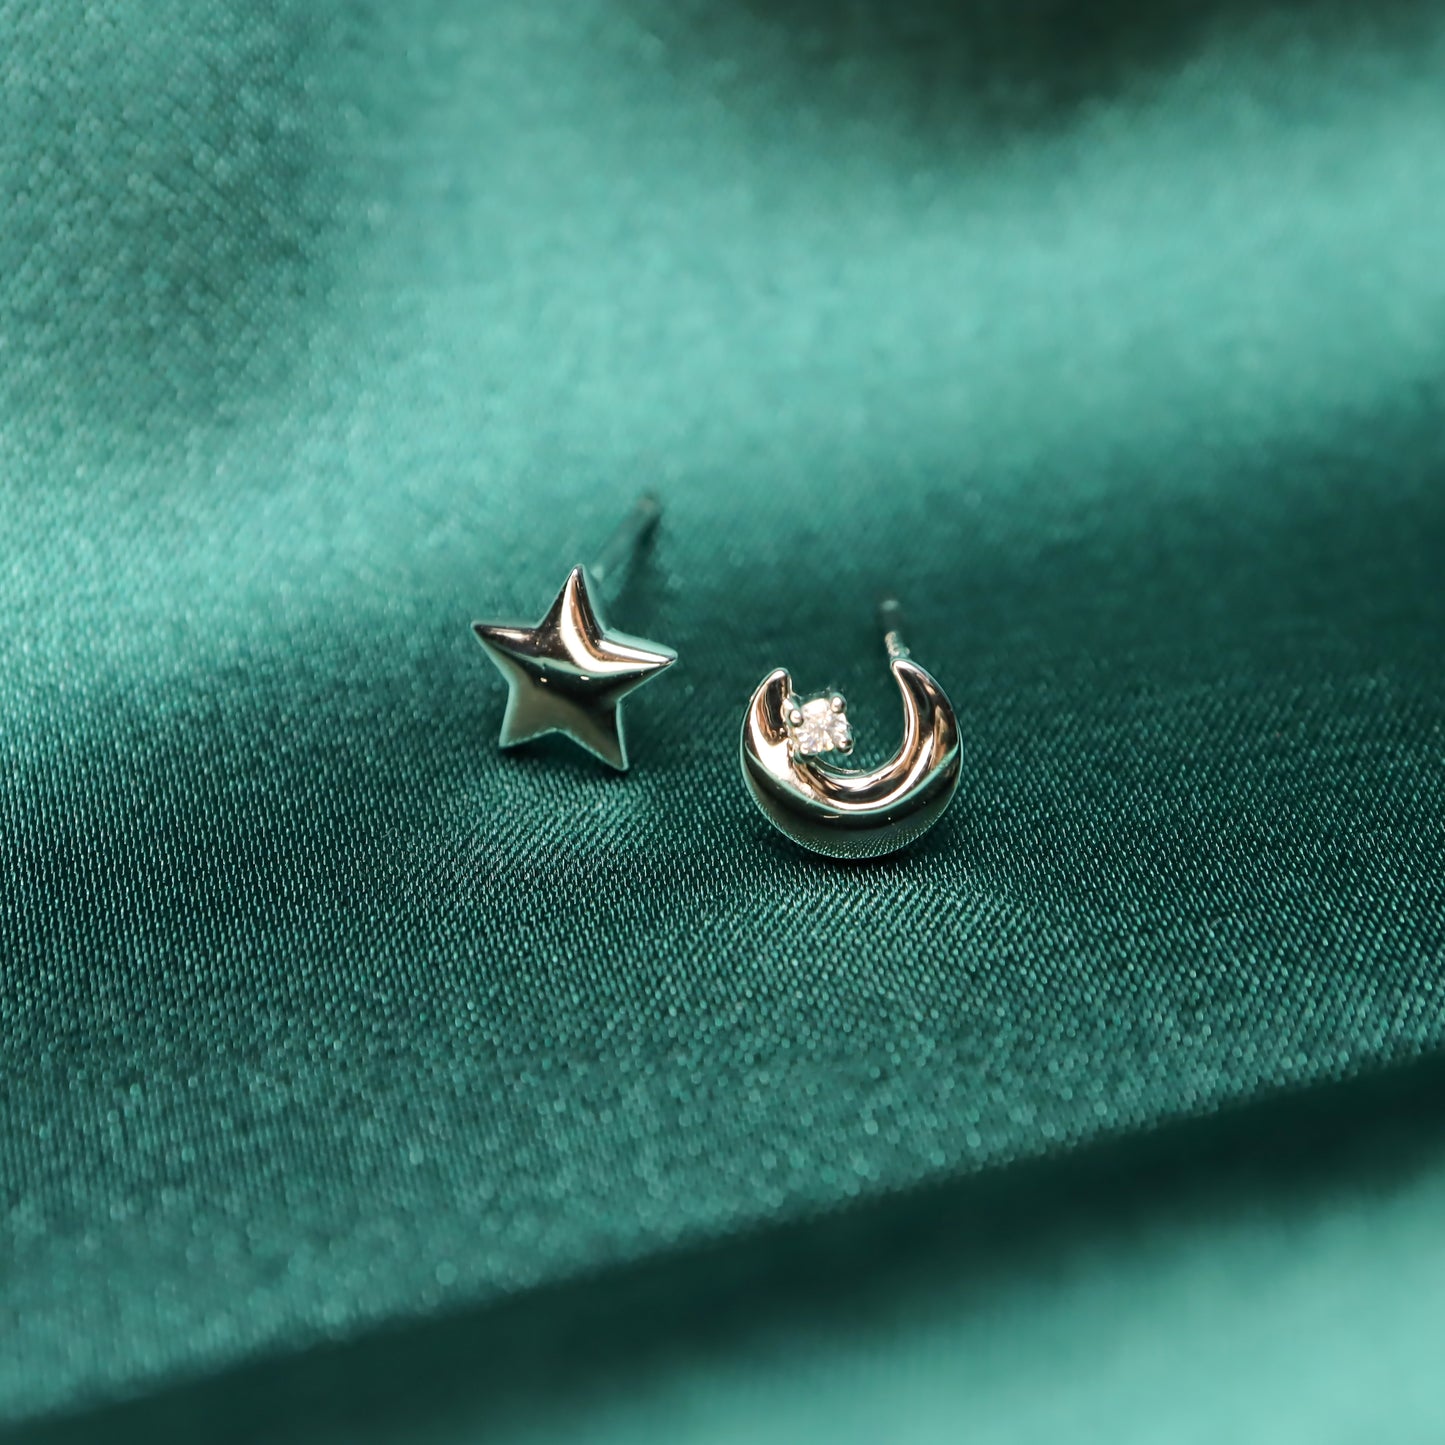 Star Loves Moon - S999 Sterling Silver & Zircon Stud Earrings (Color: Silver)